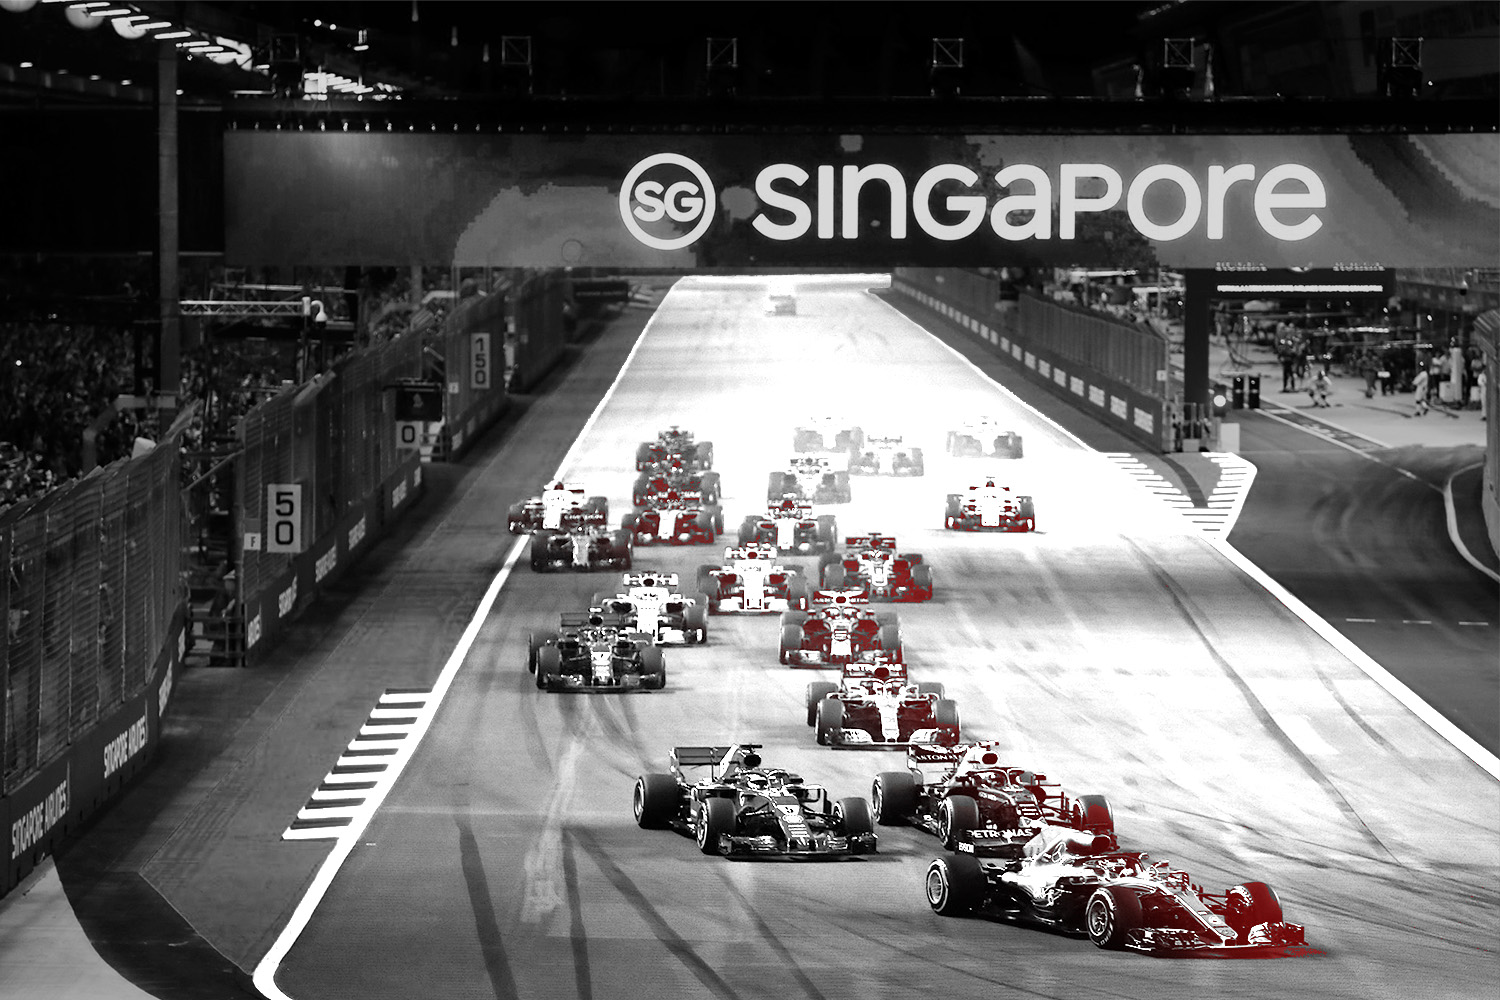 Race singapore • Singapore: